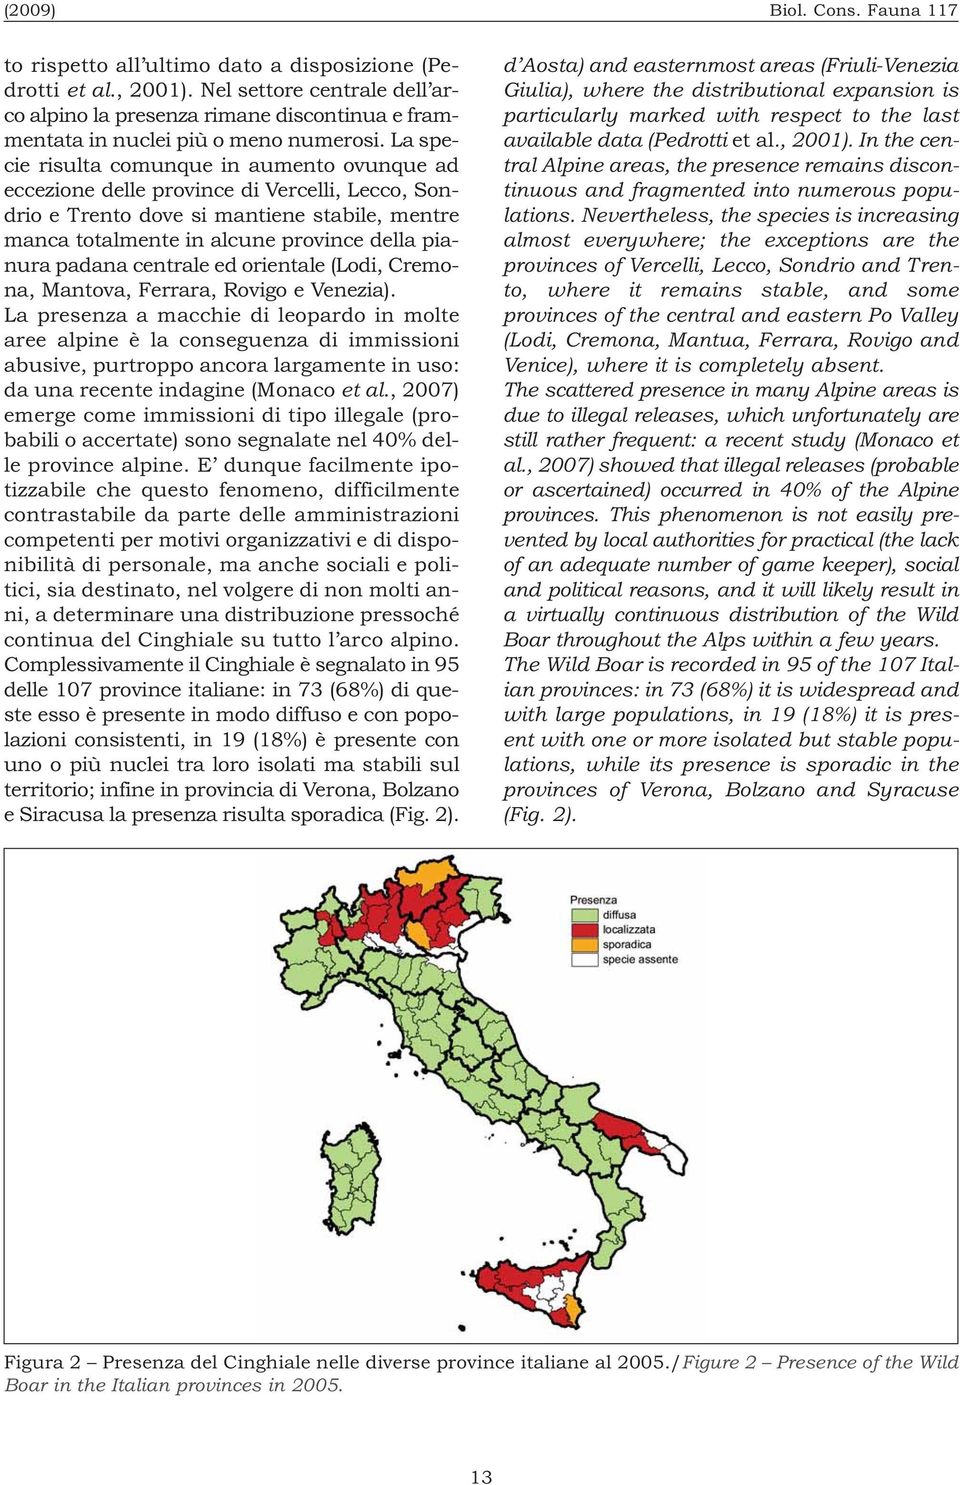 La specie risulta comunque in aumento ovunque ad eccezione delle province di Vercelli, Lecco, Sondrio e Trento dove si mantiene stabile, mentre manca totalmente in alcune province della pianura